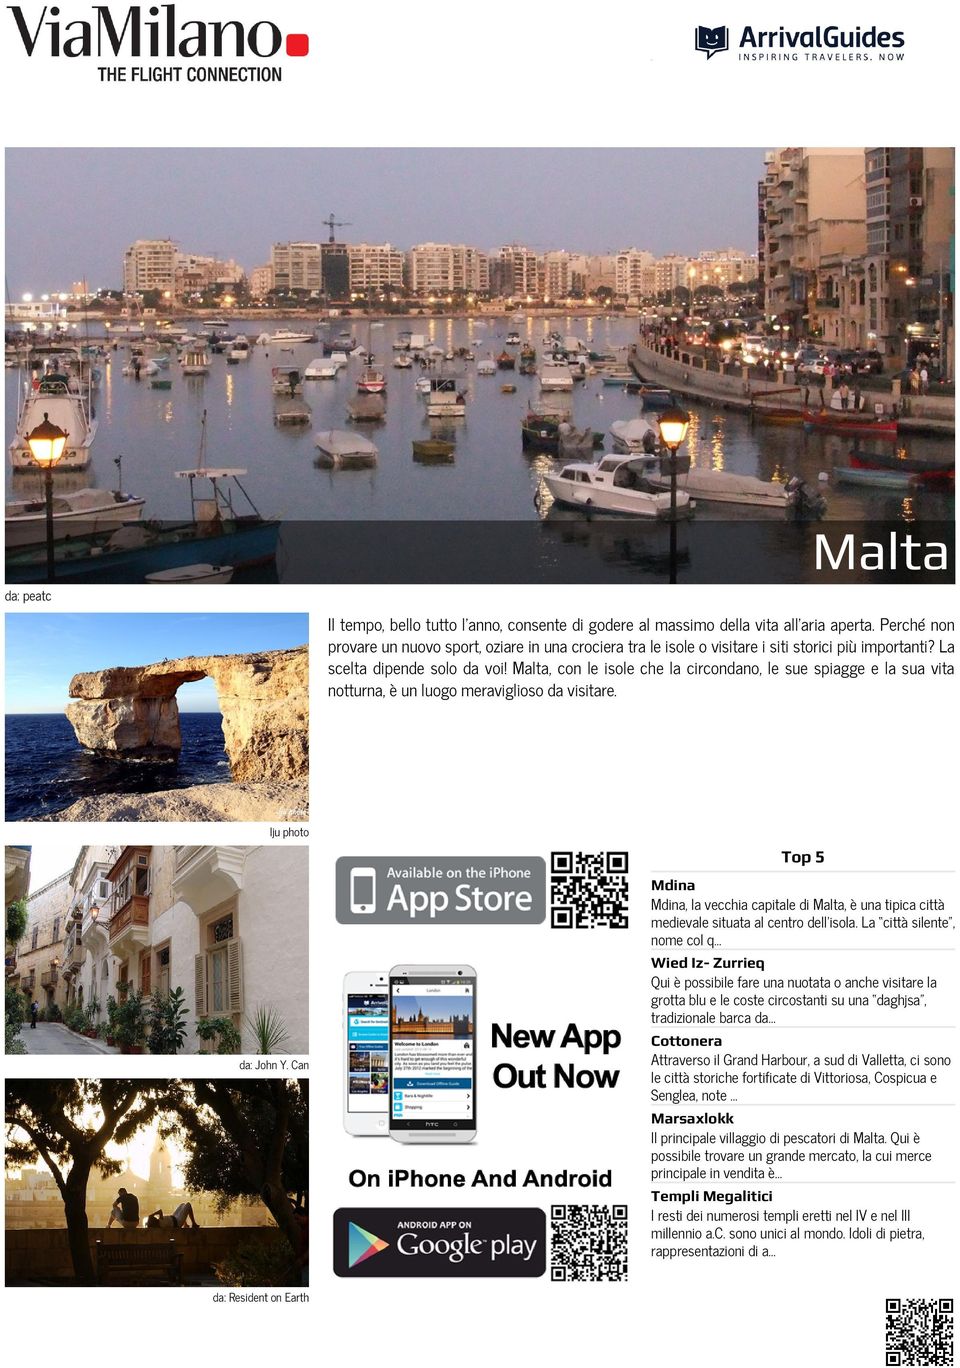 Malta, con le isole che la circondano, le sue spiagge e la sua vita notturna, è un luogo meraviglioso da visitare. lju photo da: John Y.